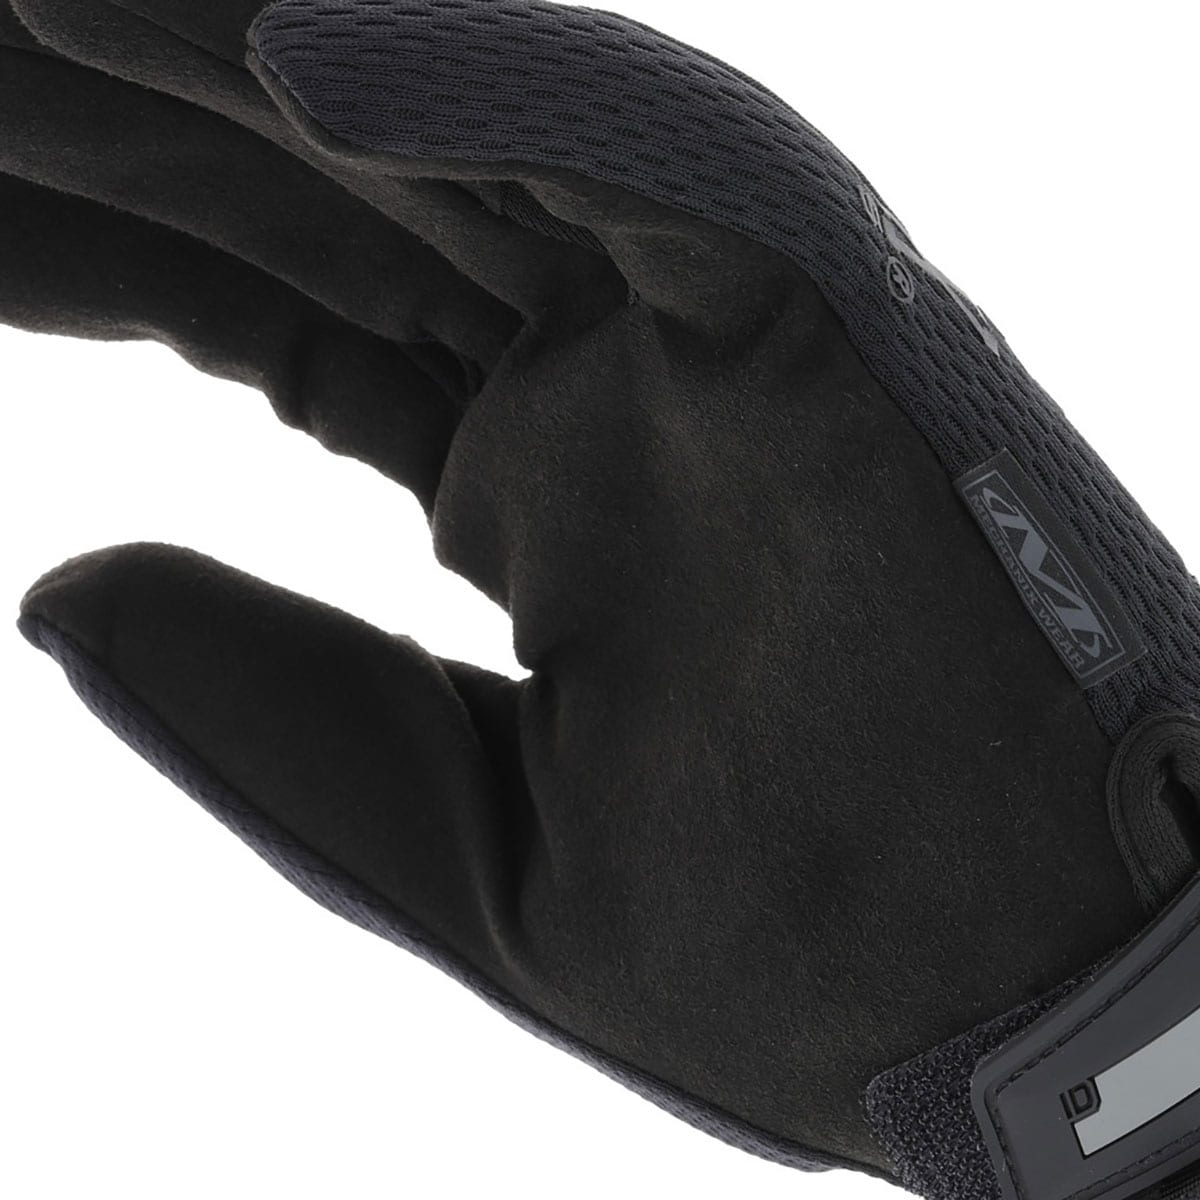 Mechanix Wear Original Covert Tactical Gloves